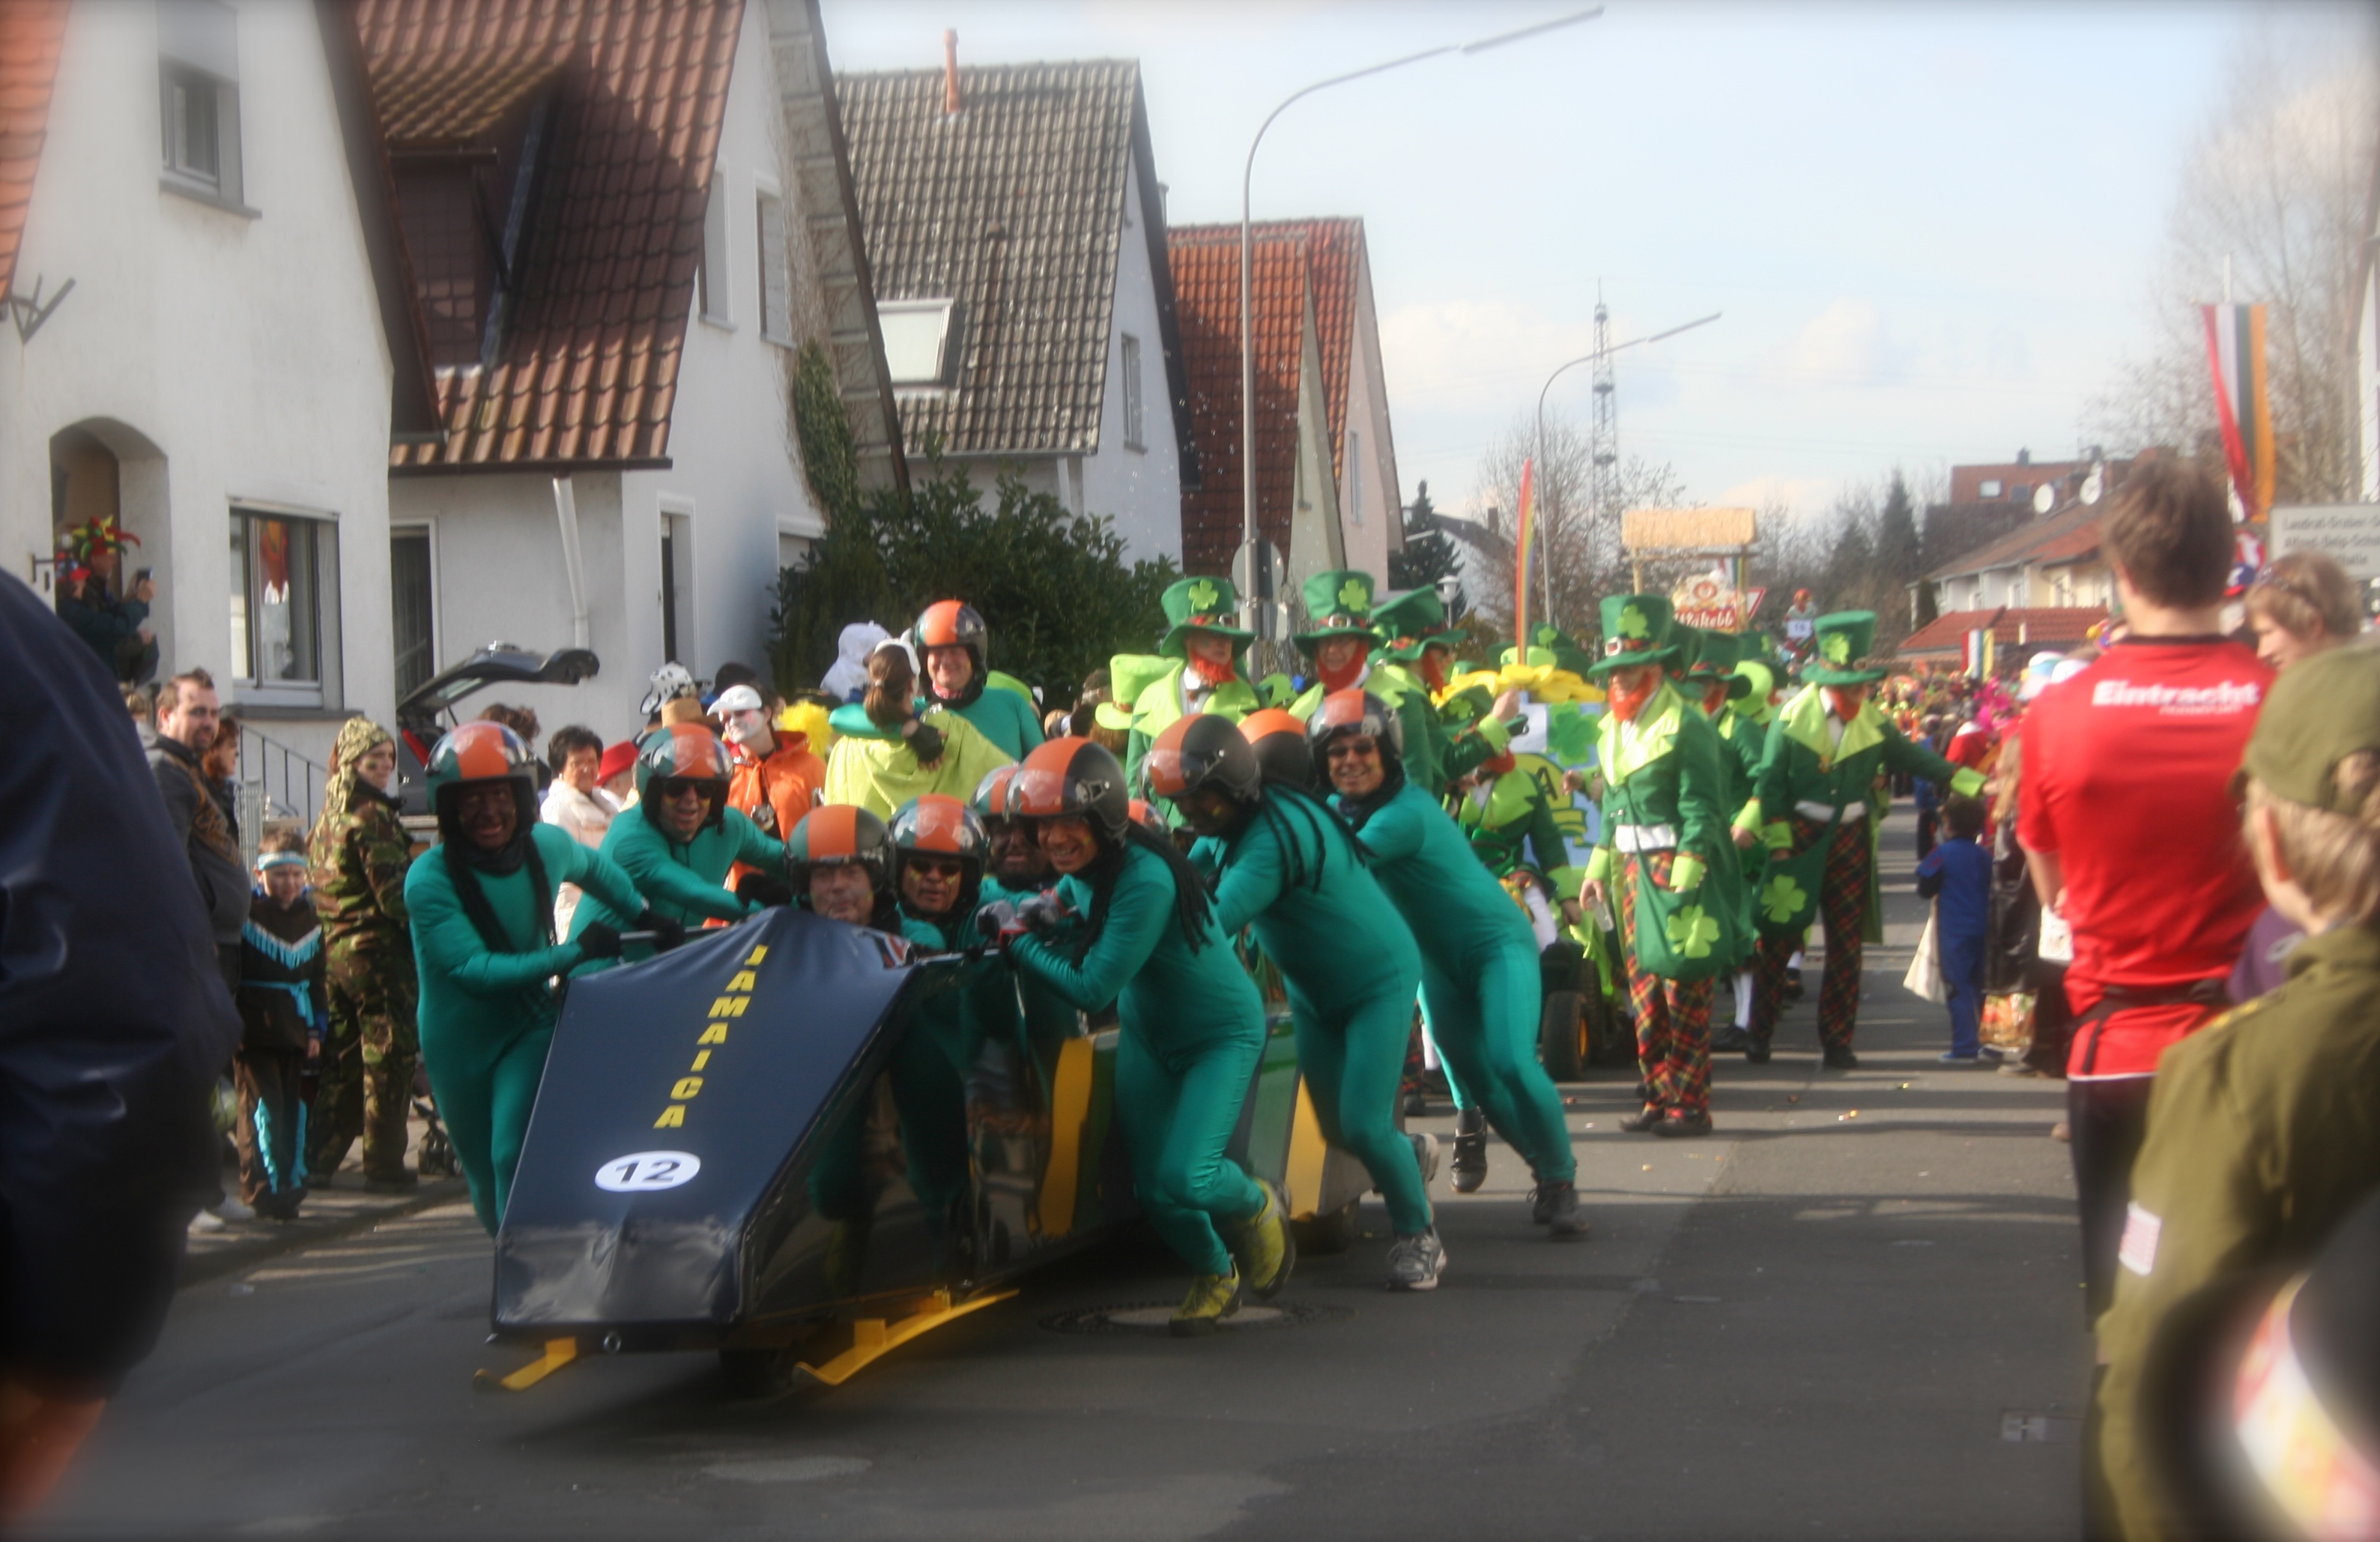 Dieburg’s Most Noteworthy Faschingsumzug Costumes/Groups, Karneval 2014